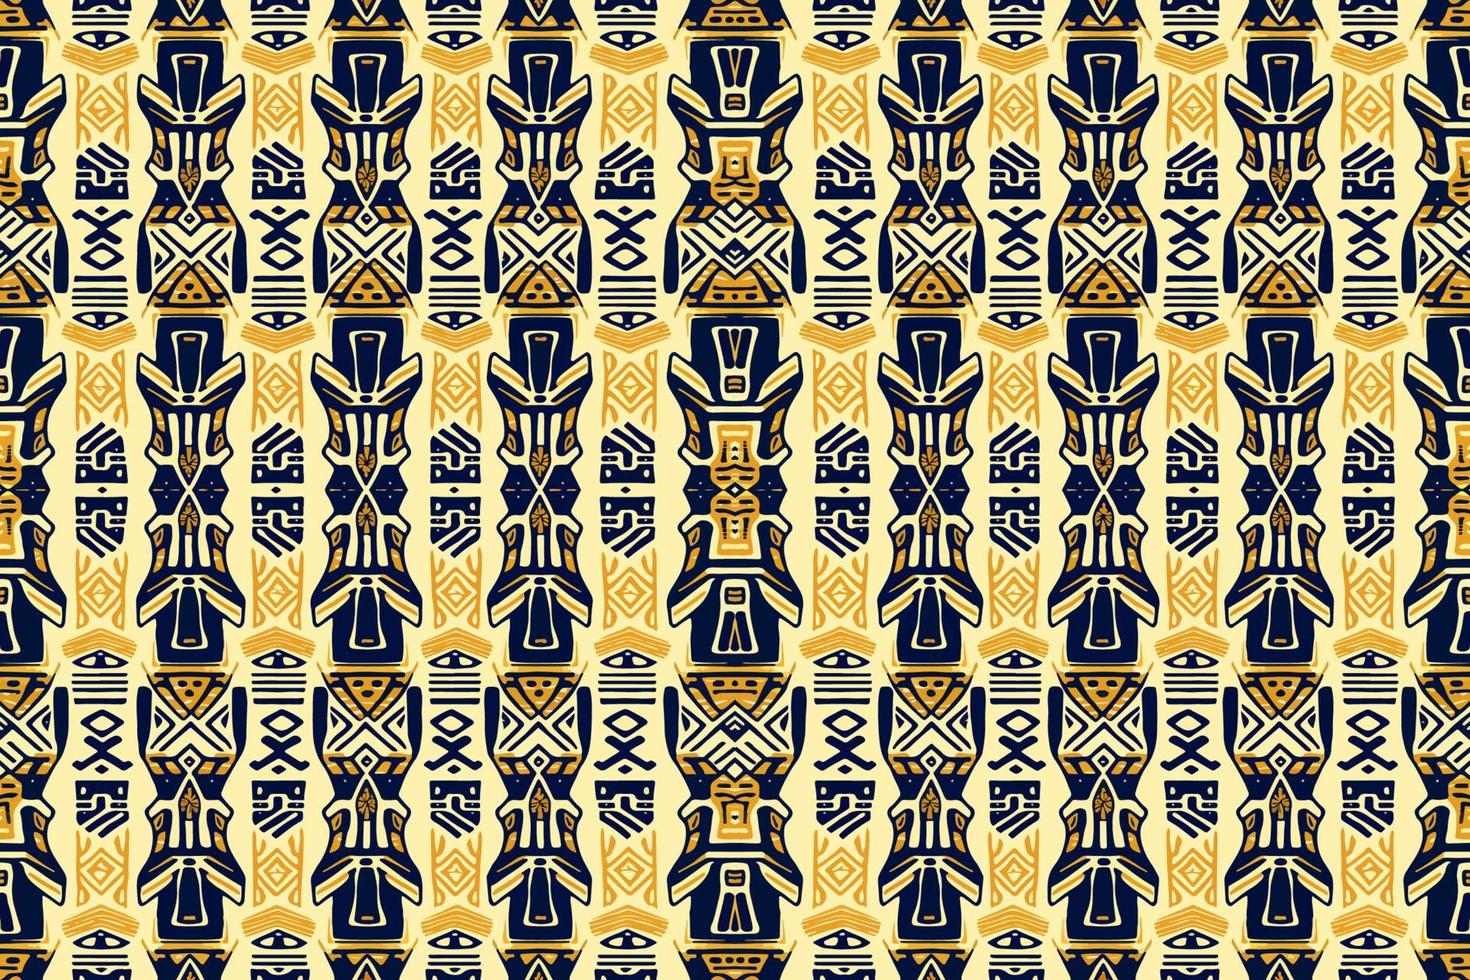 etnisch ikat Egyptische hiërogliefen patroon. abstract traditioneel volk antiek tribal grafisch lijn. structuur textiel kleding stof etnisch Egyptische patronen vector. overladen elegant luxe wijnoogst retro stijl. vector